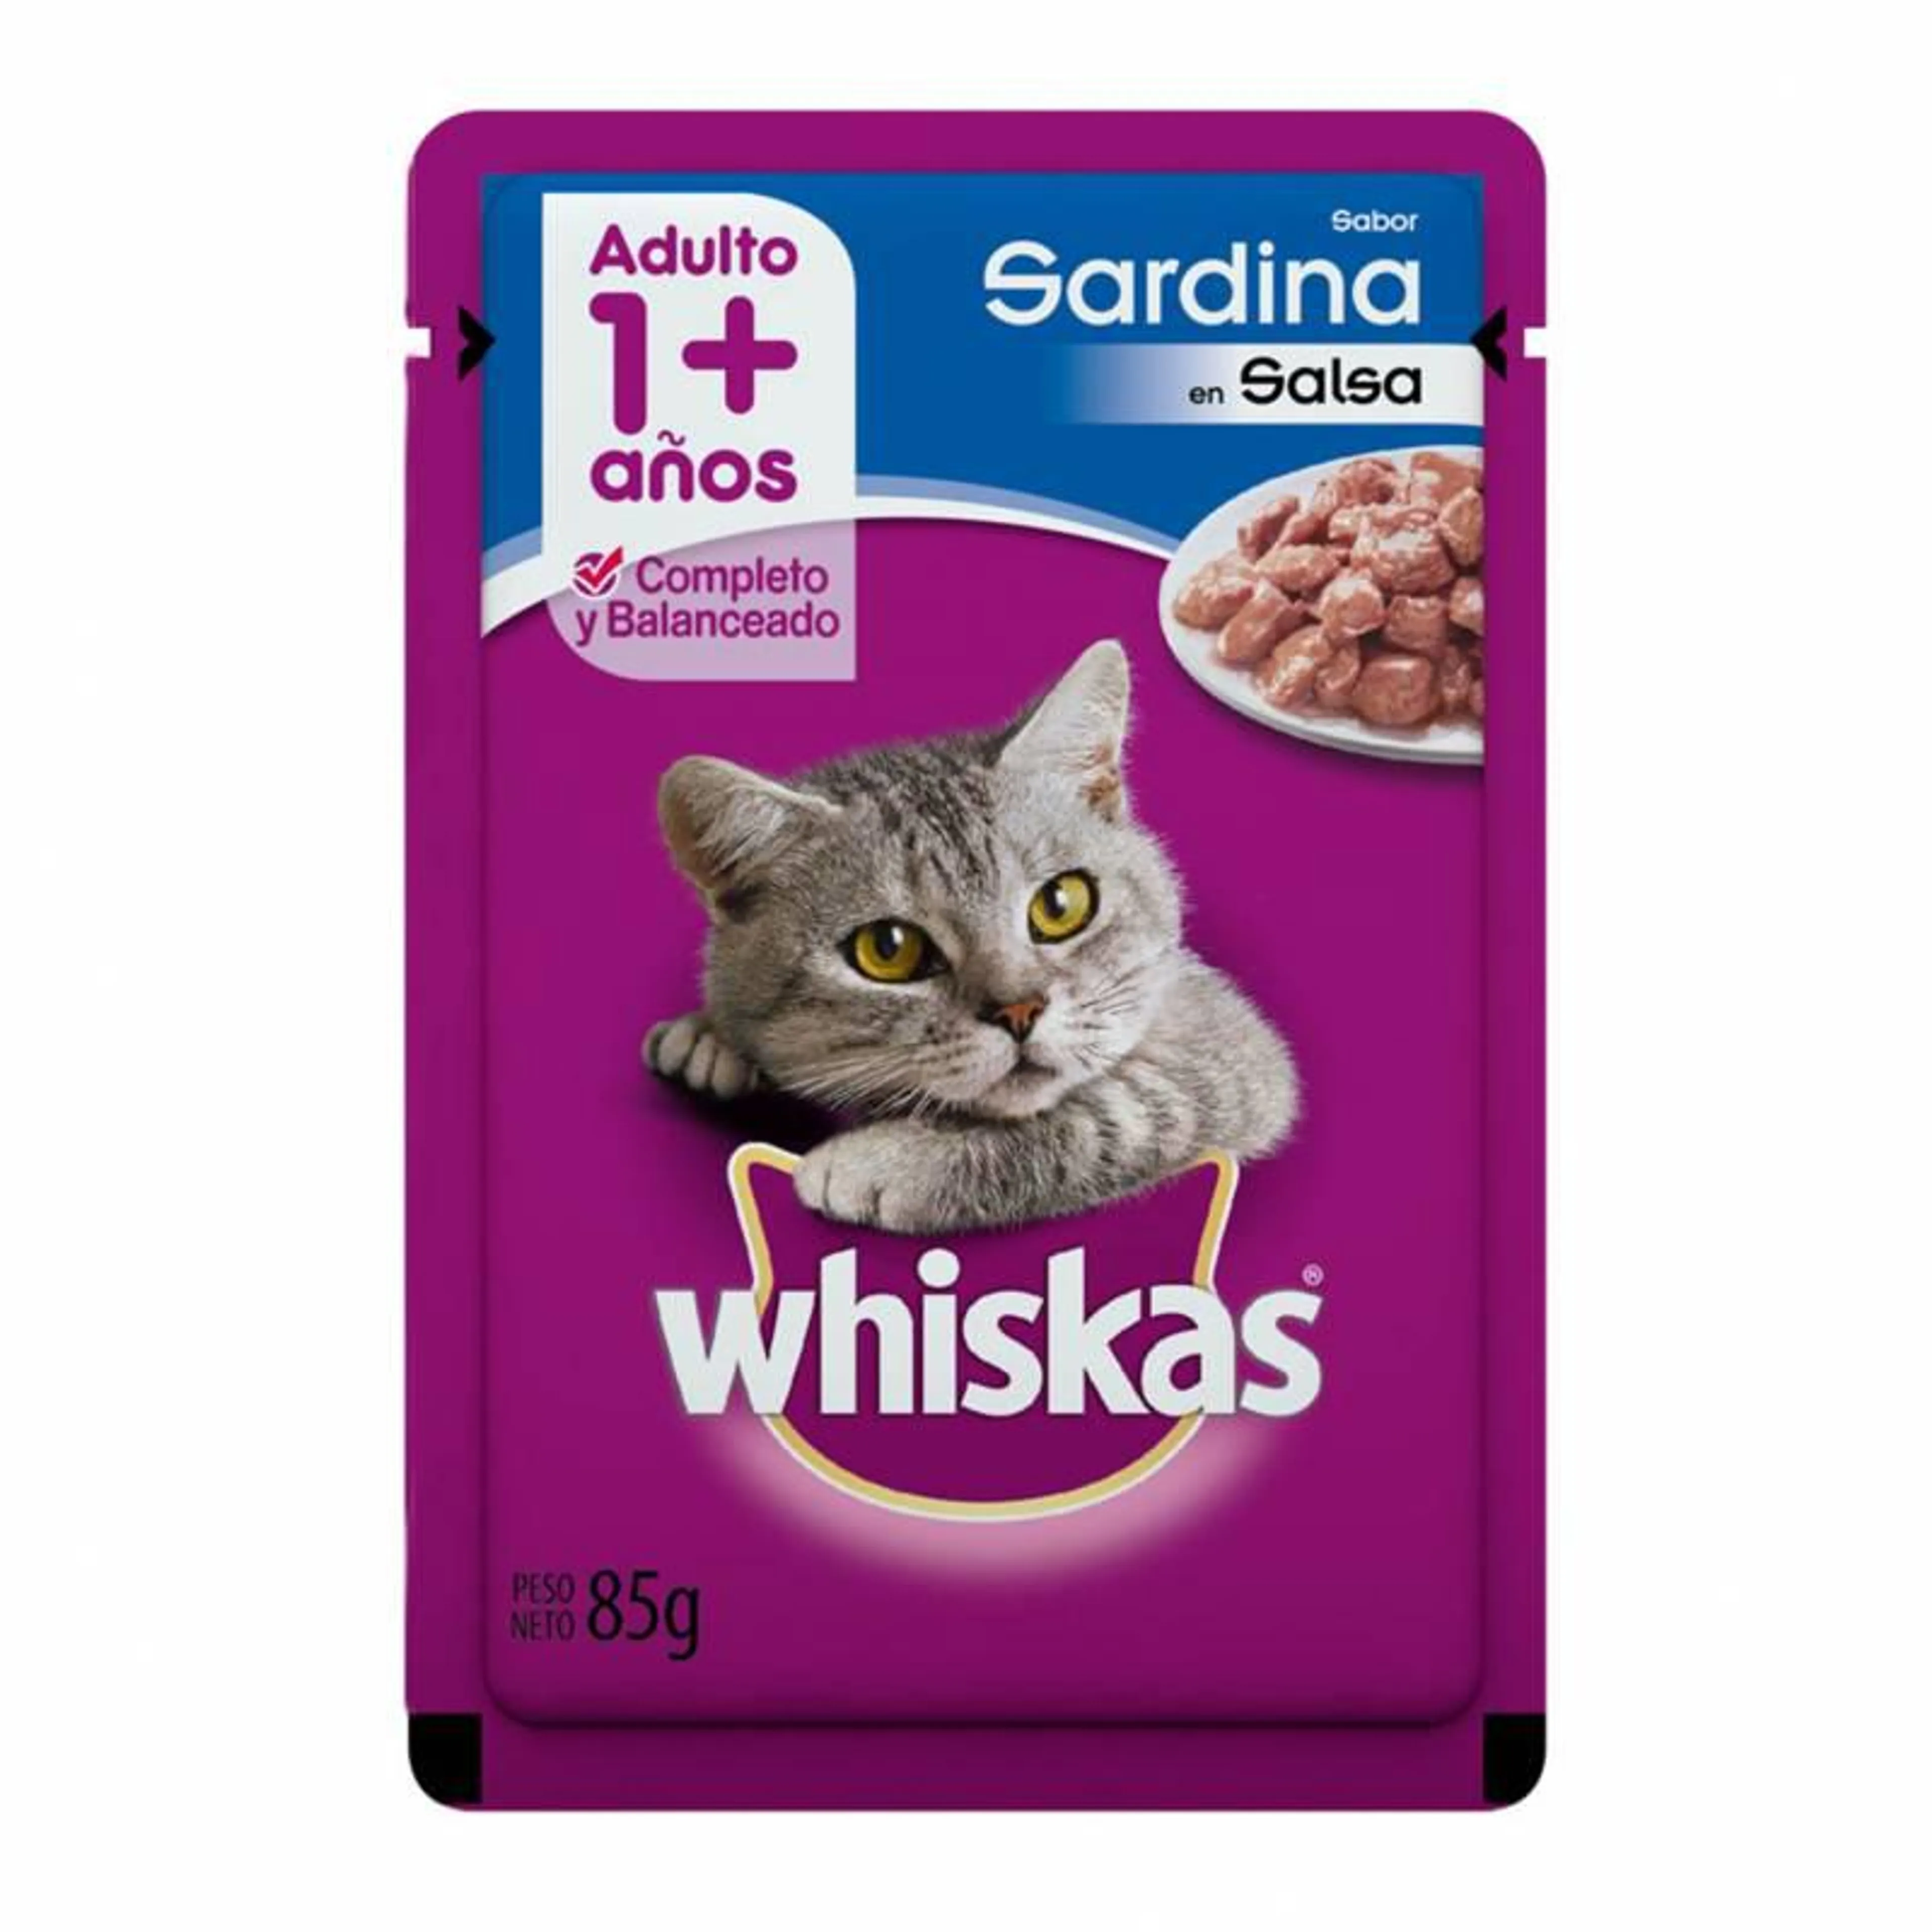 Alimento para Gato Adulto Pouch Sardinas Whiskas x 85 g.